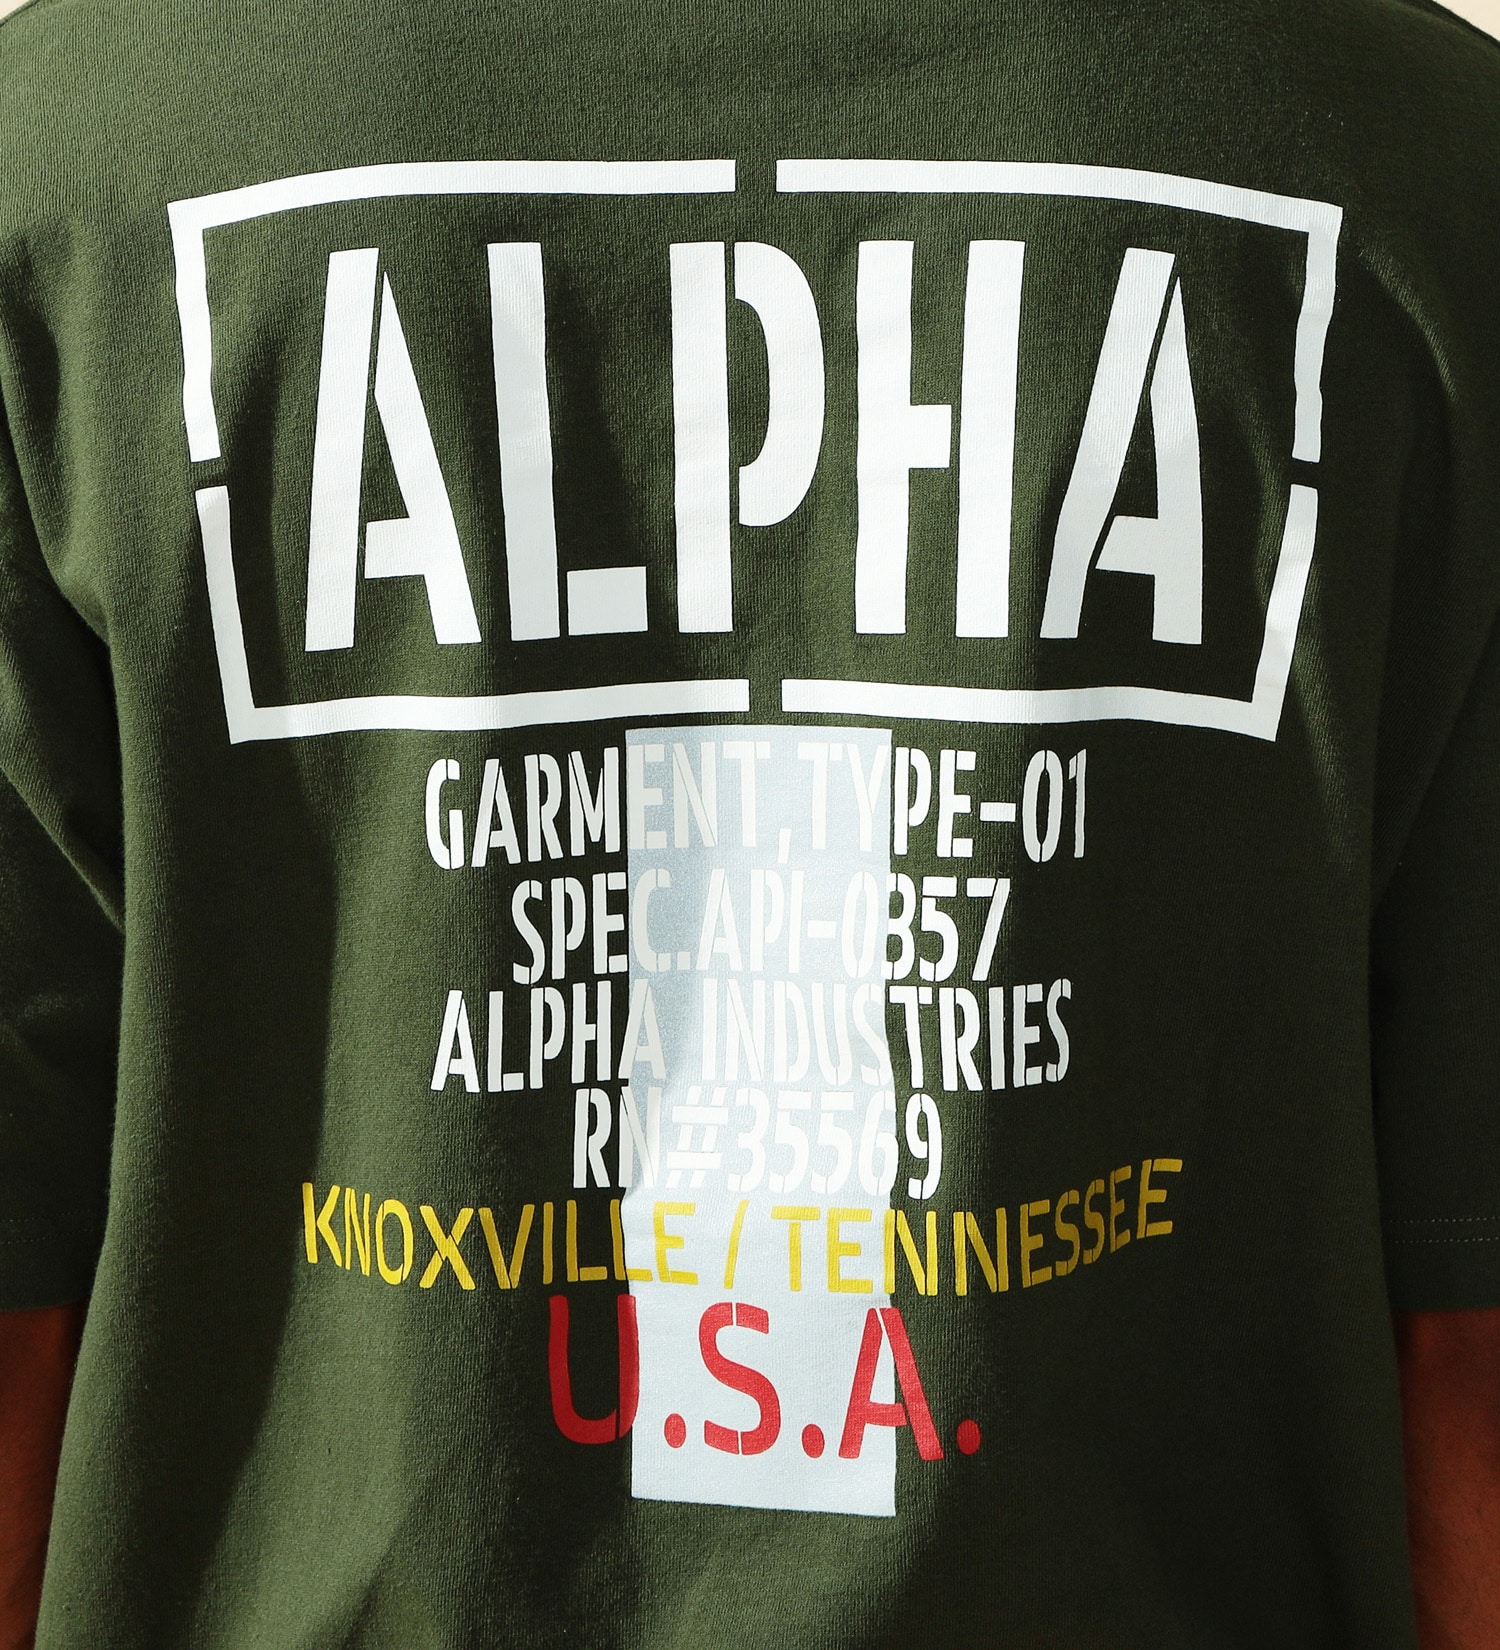 ALPHA(アルファ)のリフレクタープリントTシャツ 半袖|トップス/Tシャツ/カットソー/メンズ|アーミー